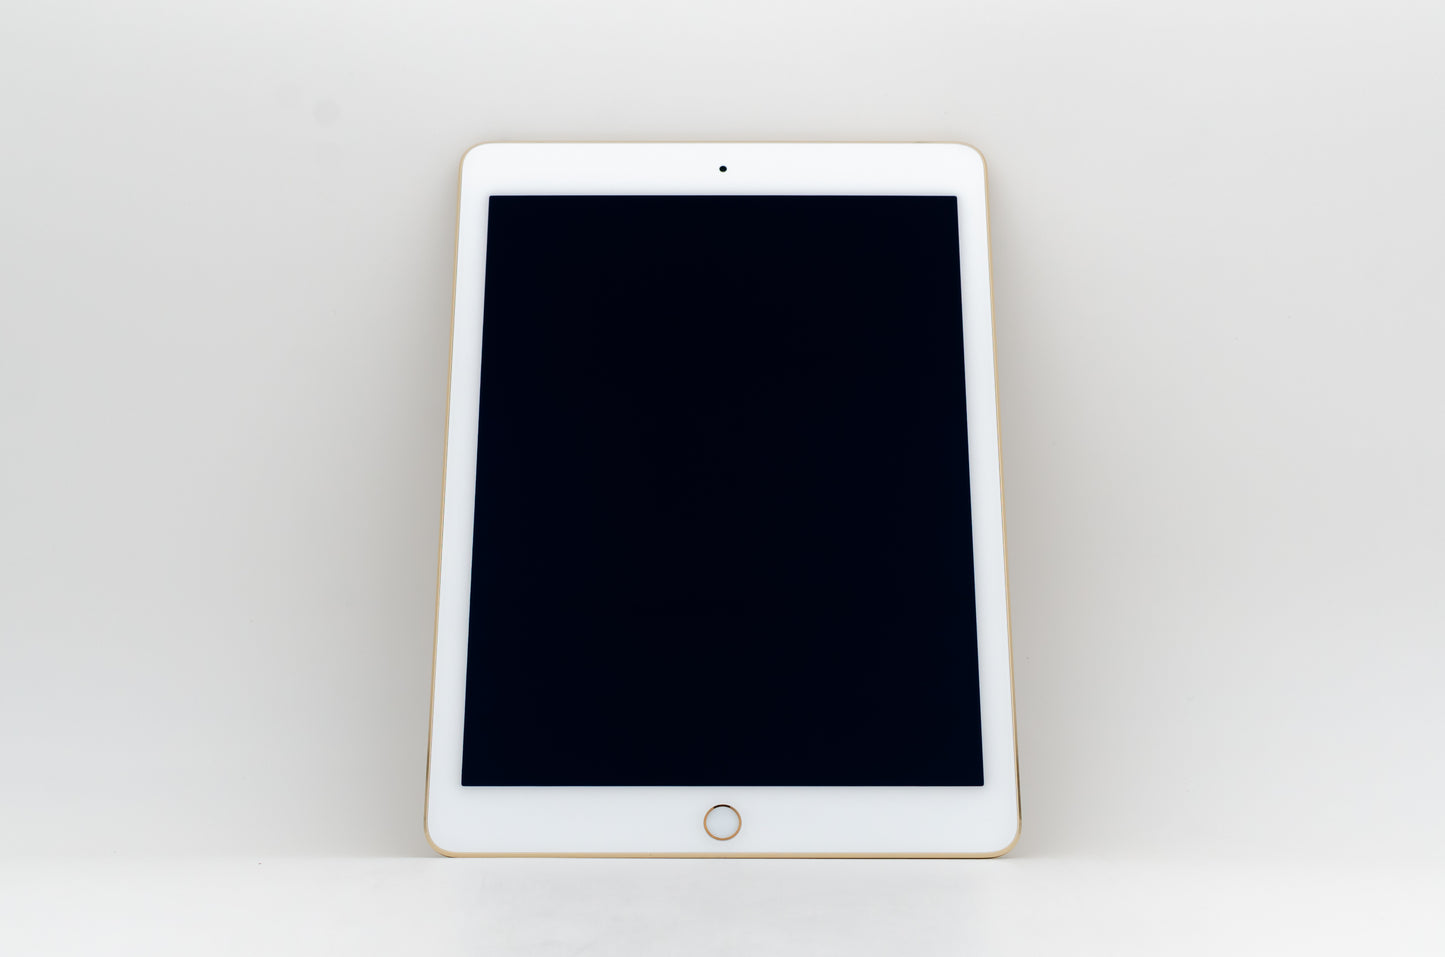 apple-2014-9.7-inch-ipad-air-2-a1566-gold/white-3